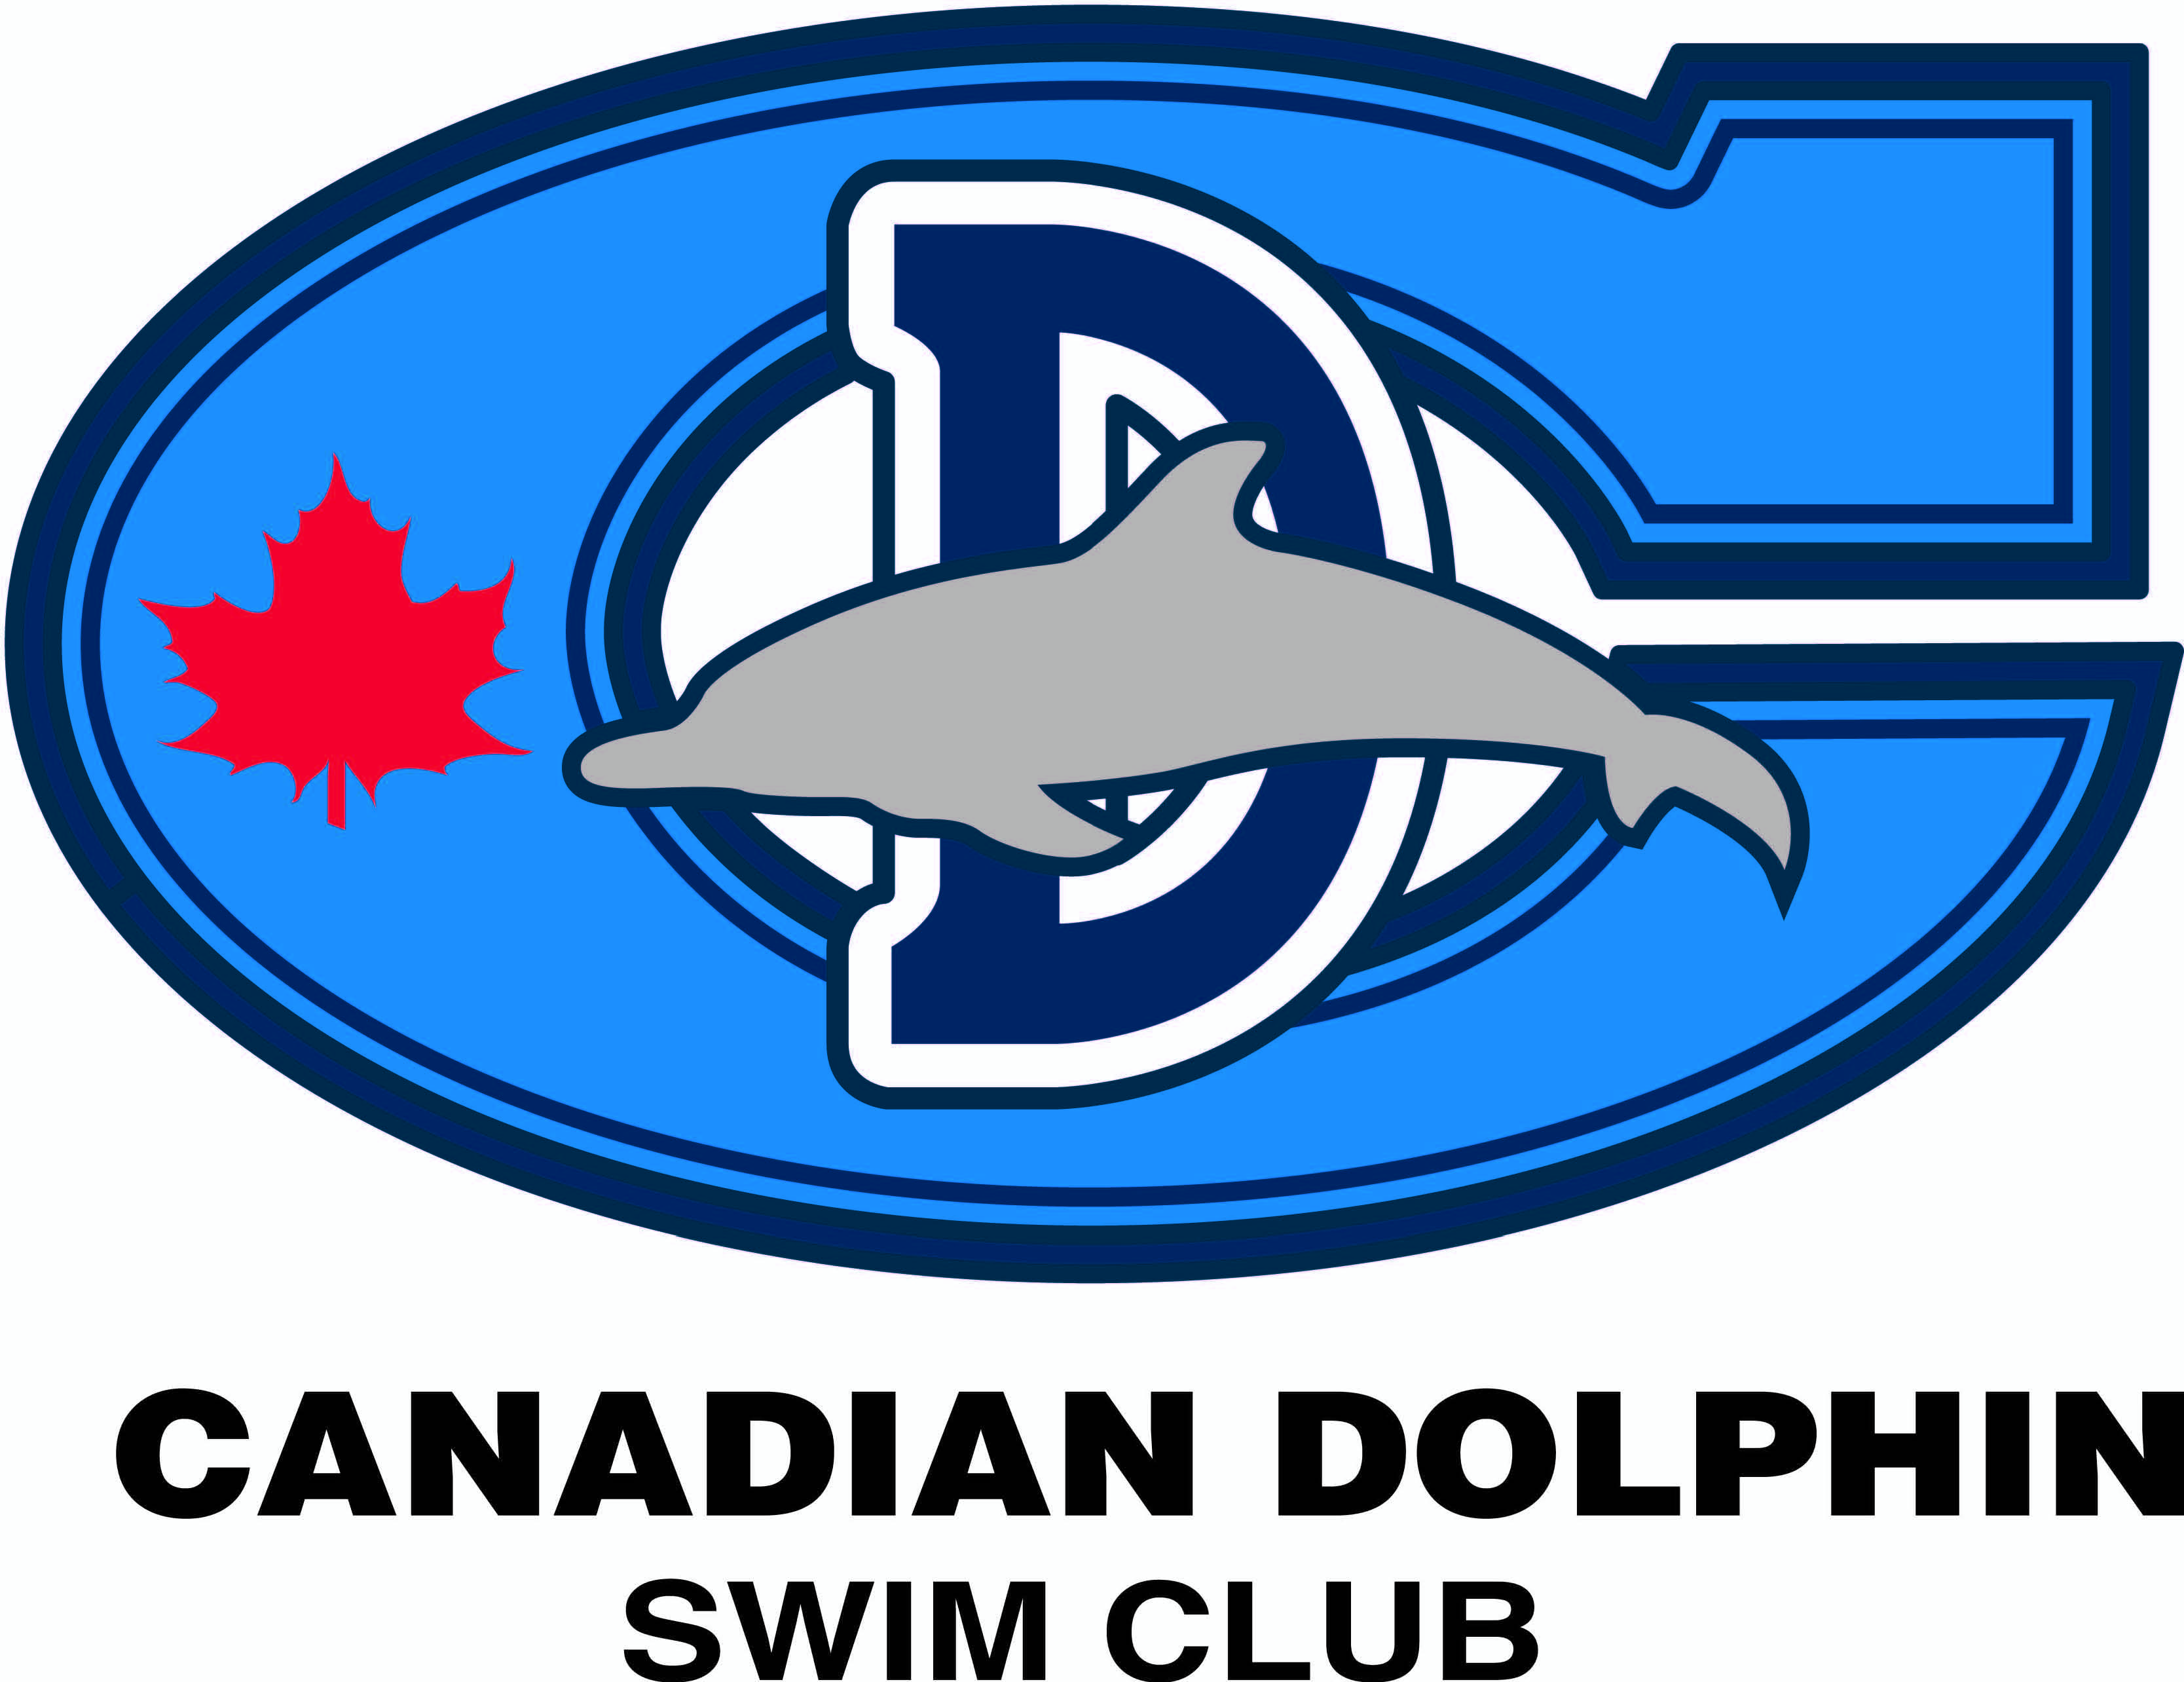 Canadian Dolphin Swim Club